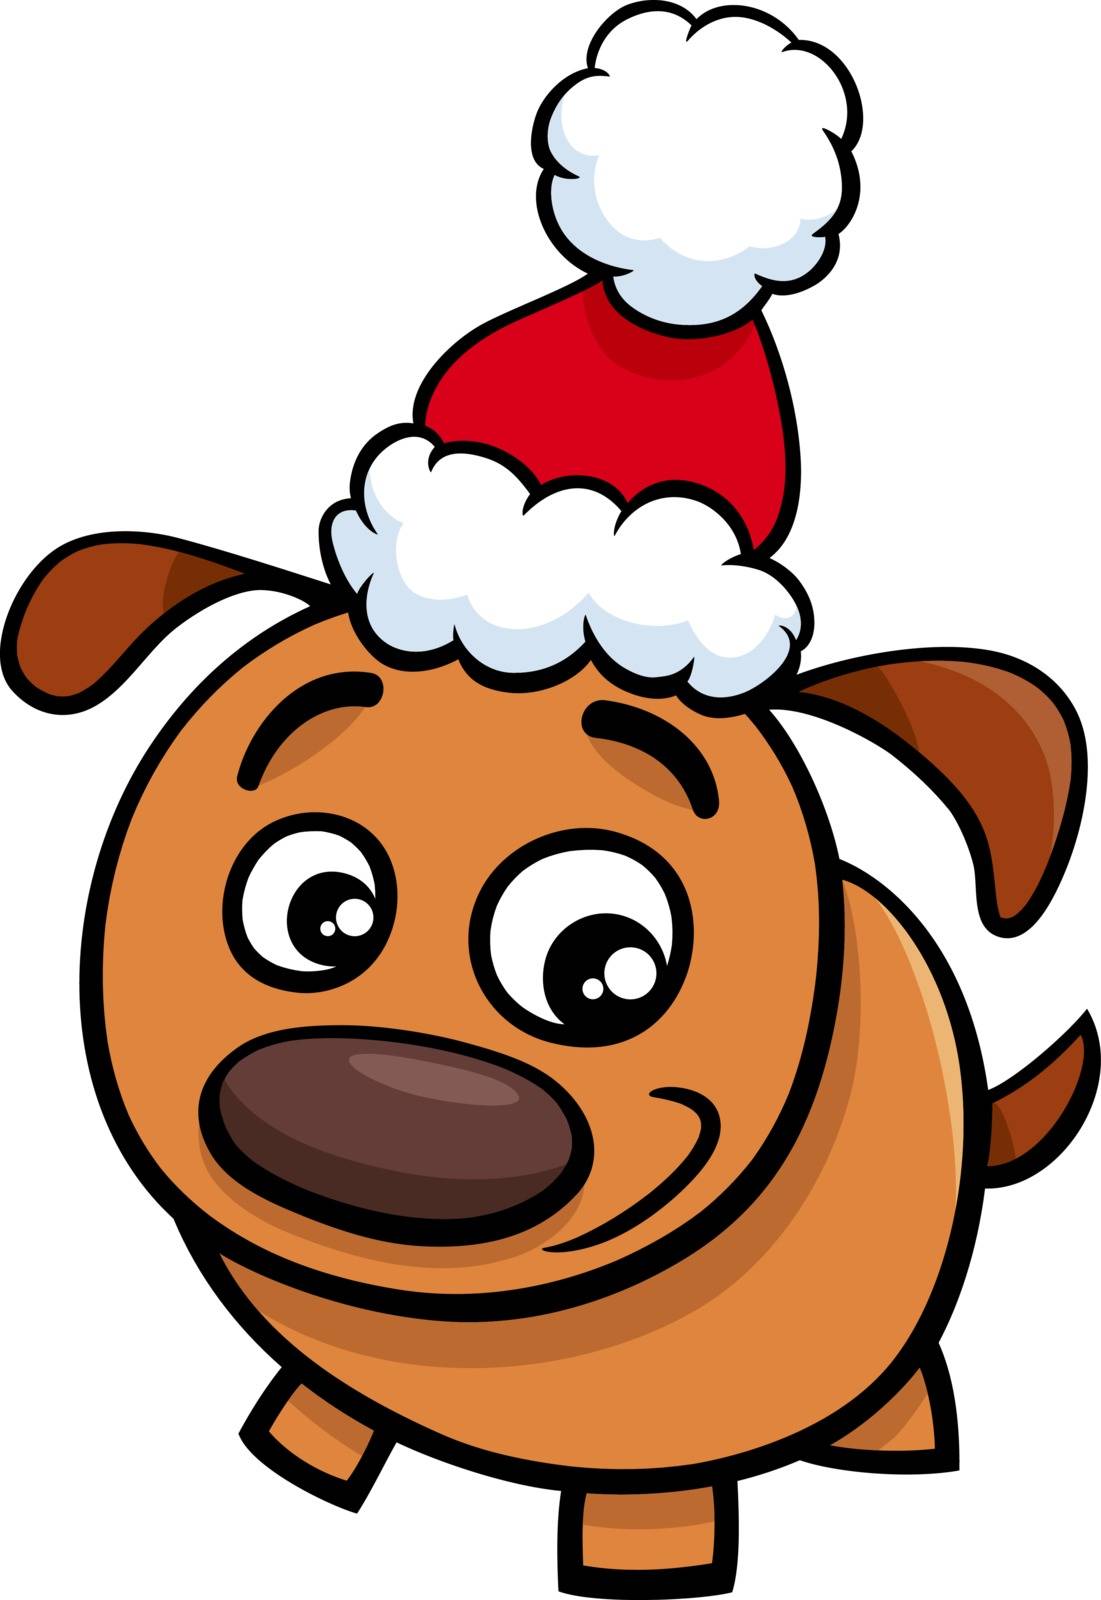 puppy on Christmas time cartoon by izakowski